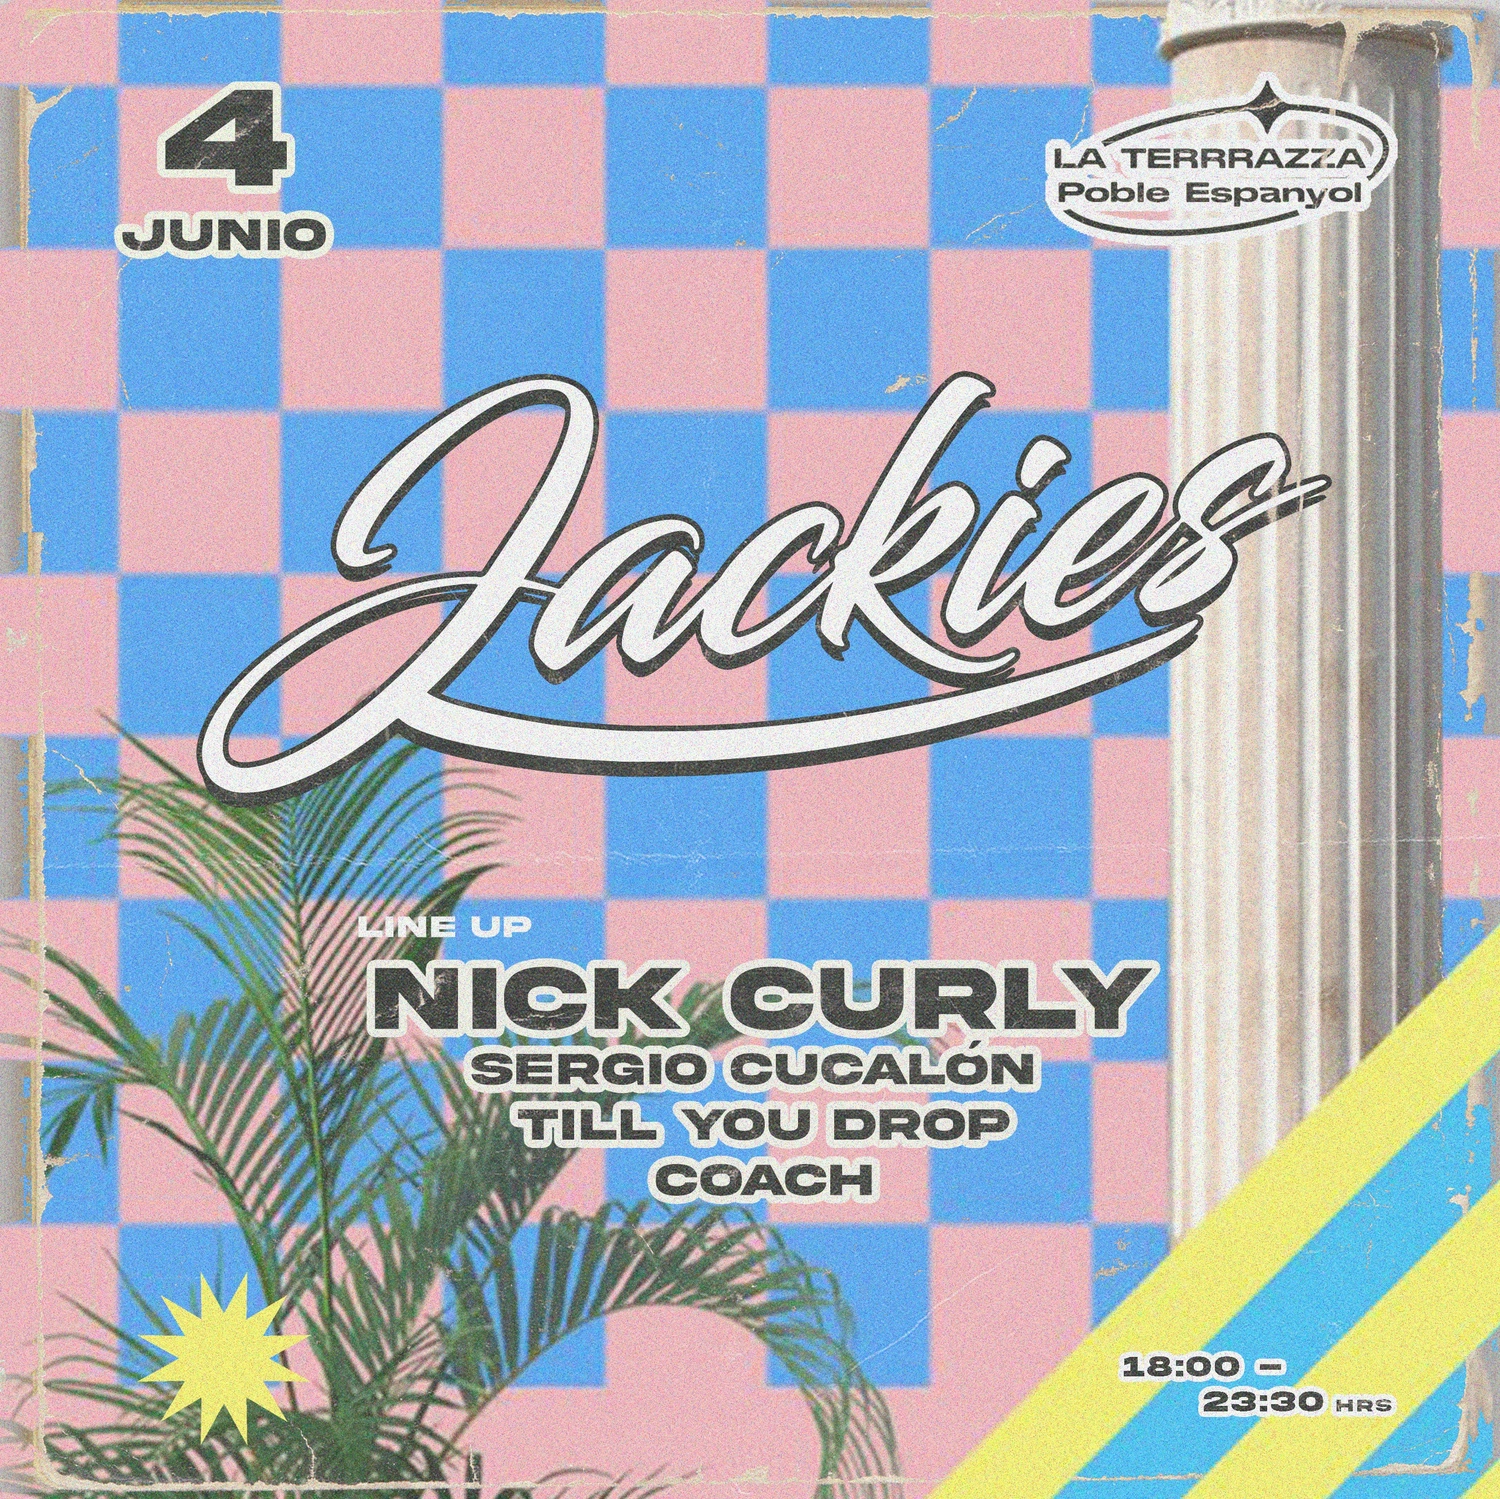 Jackies-nick-curly